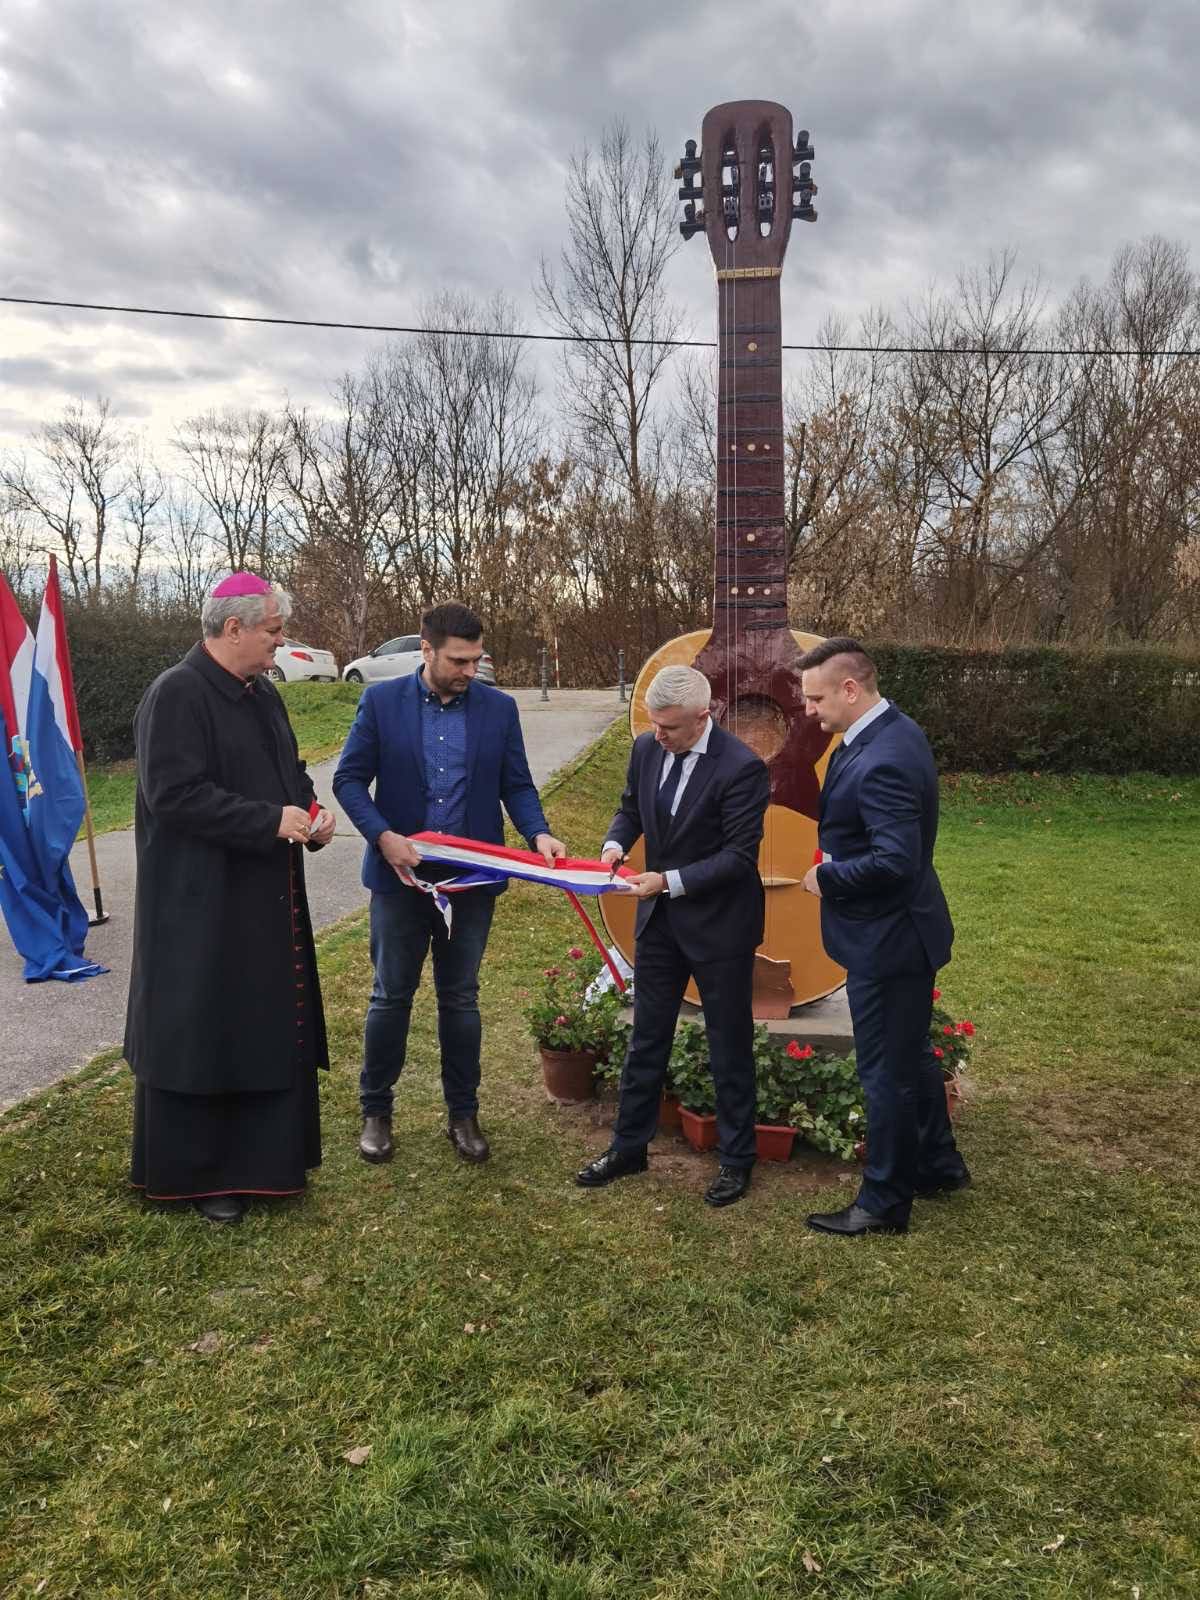 Župan Ivan Celjak sa suradnicima nazočio je u nedjelju, 8. siječnja 2023. godine, svečanosti obilježavanja stoljetne tradicije izrade tambura u Preloščici.